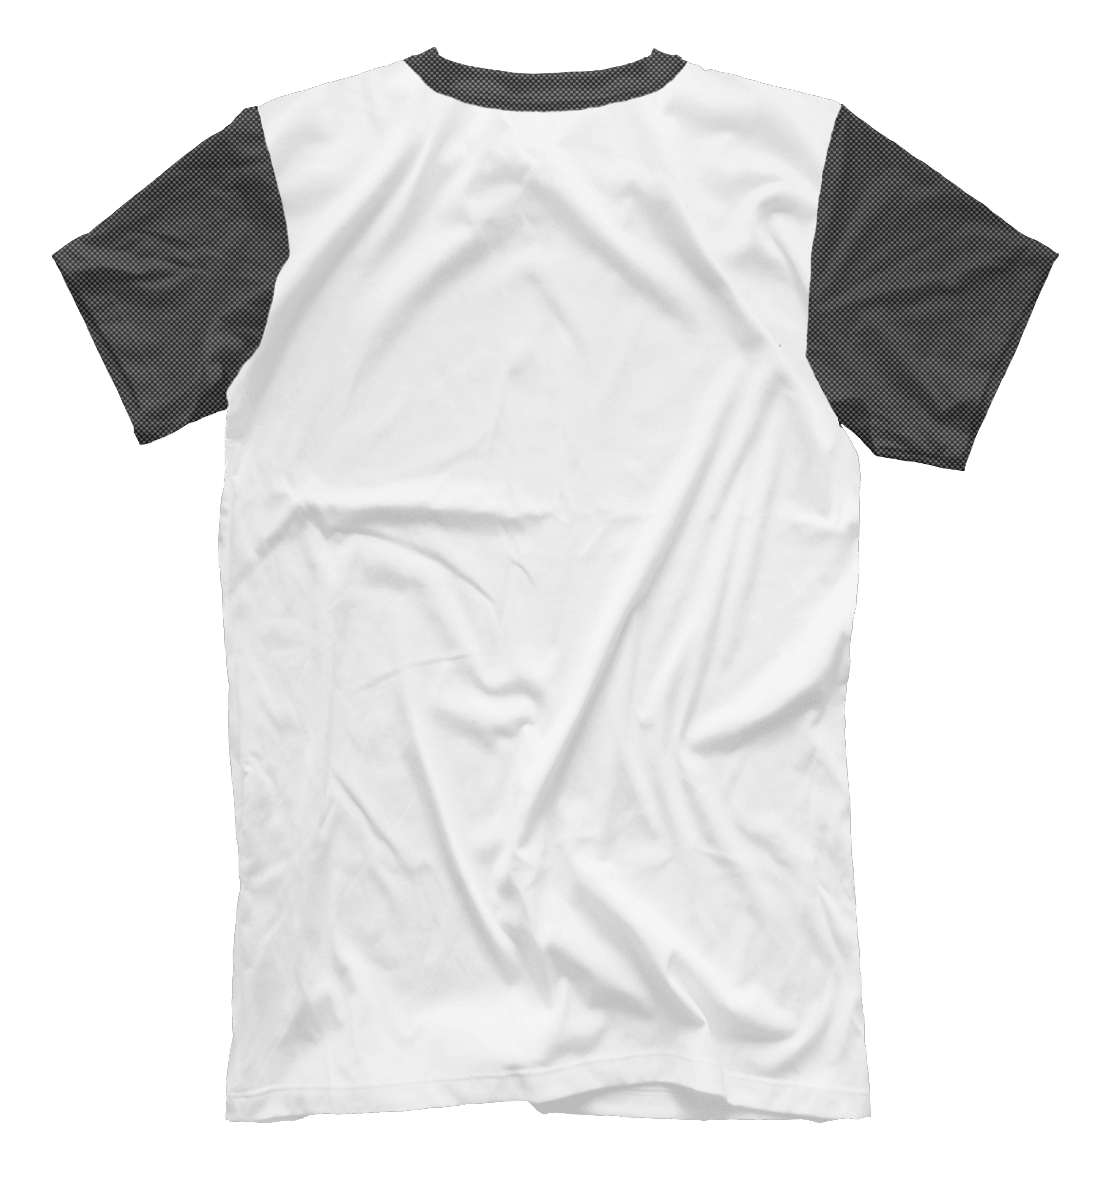 Мужская футболка с принтом Dar'ya-carbon  - фото 2-спина